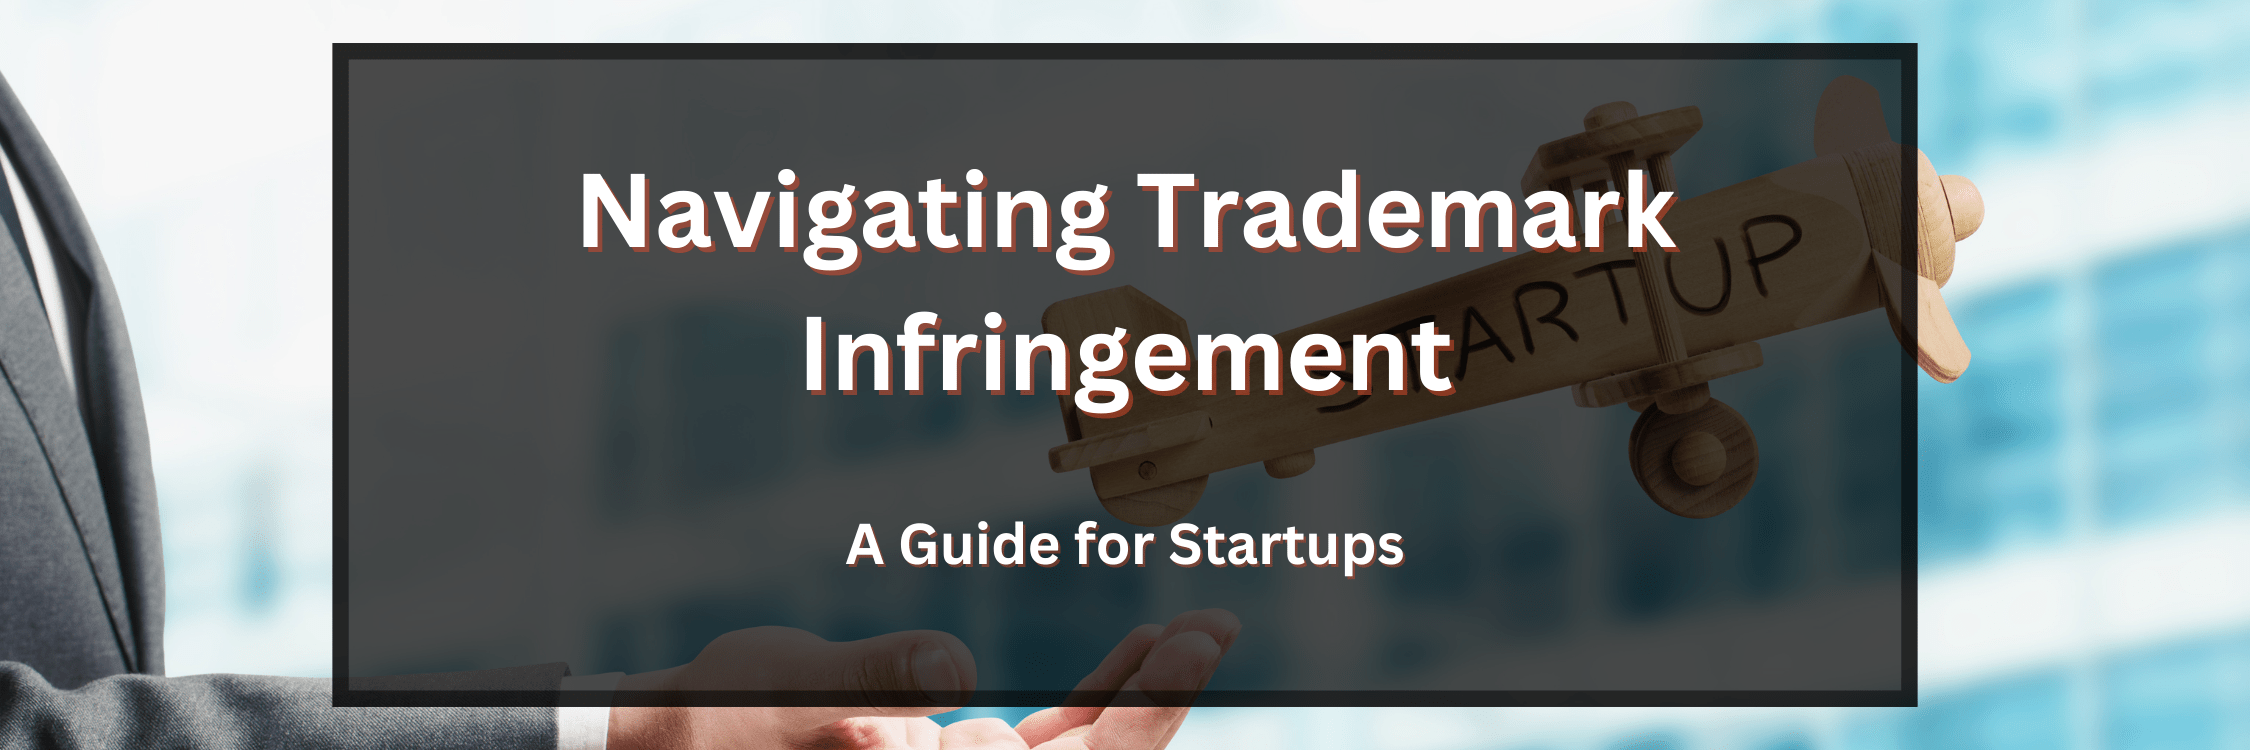 Navigating Trademark Infringement: A Guide for Startups